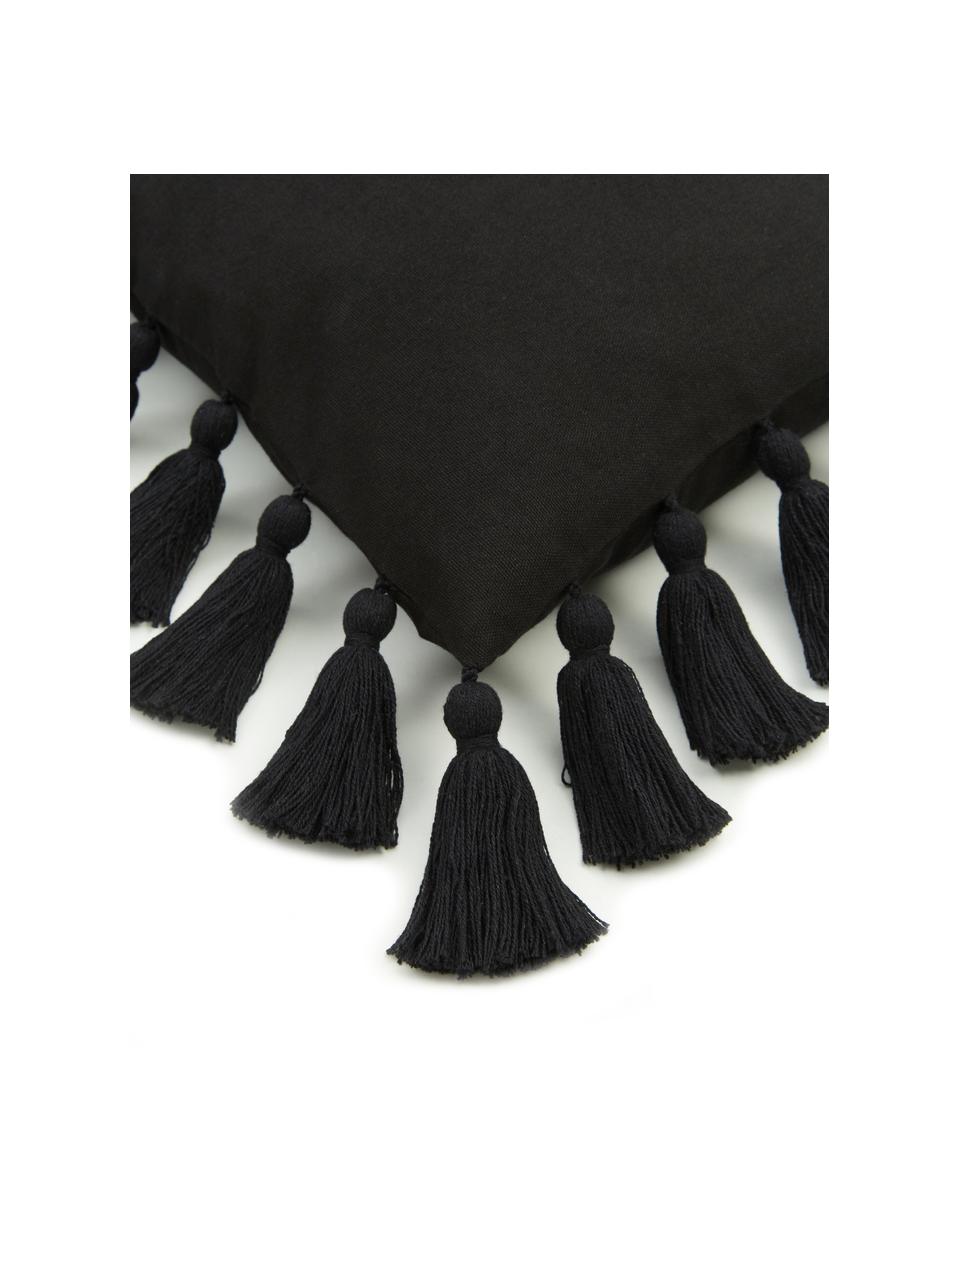 Kussenhoes Shylo in zwart met kwastjes, 100% katoen, Zwart, B 40 x L 40 cm